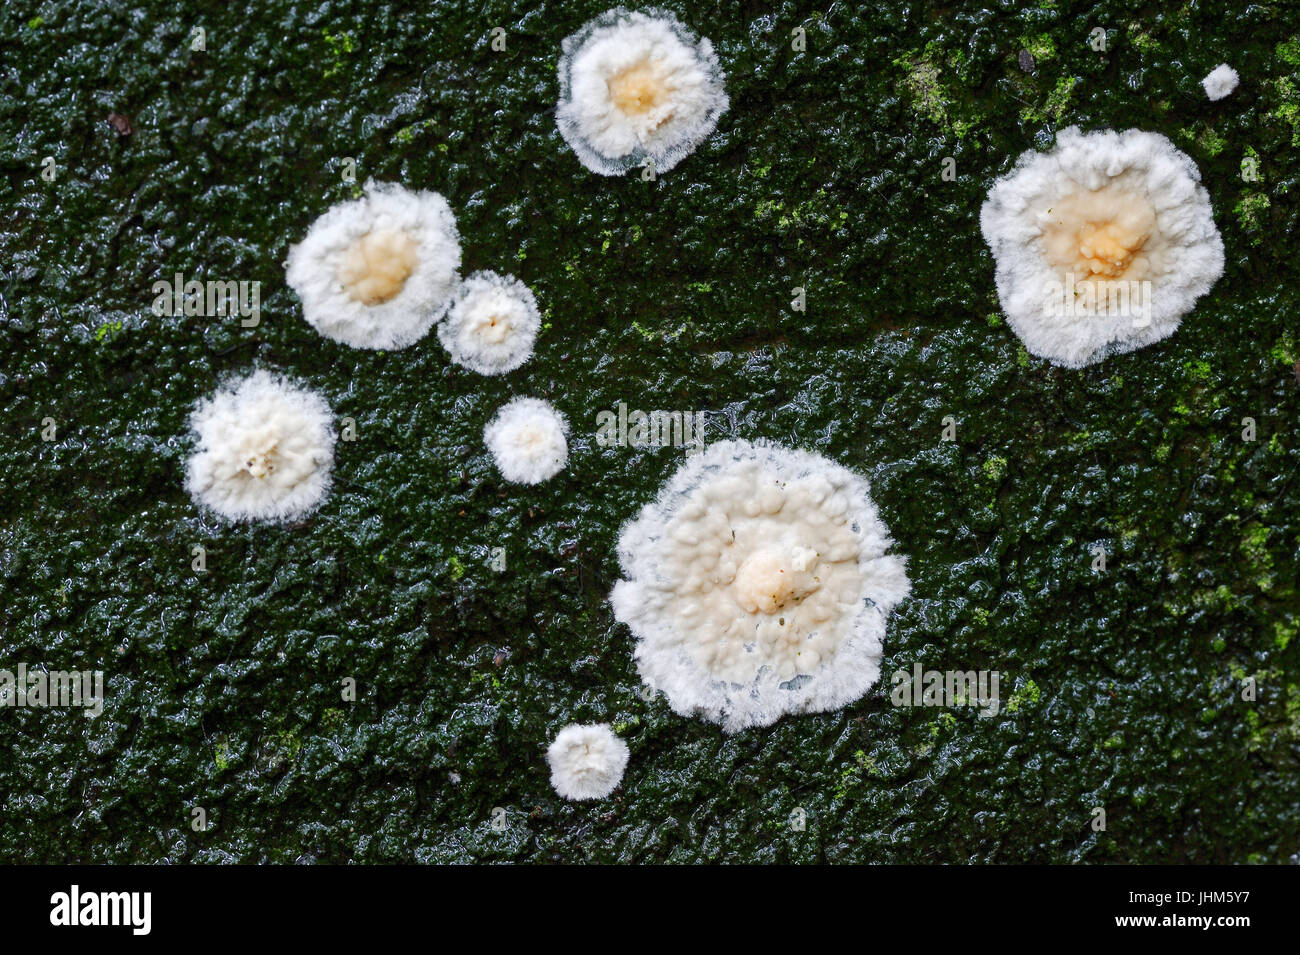 Fungus, North Rhine-Westphalia, Germany / (Cylindrobasidium laeve, Cylindrobasidium evolvens) Stock Photo